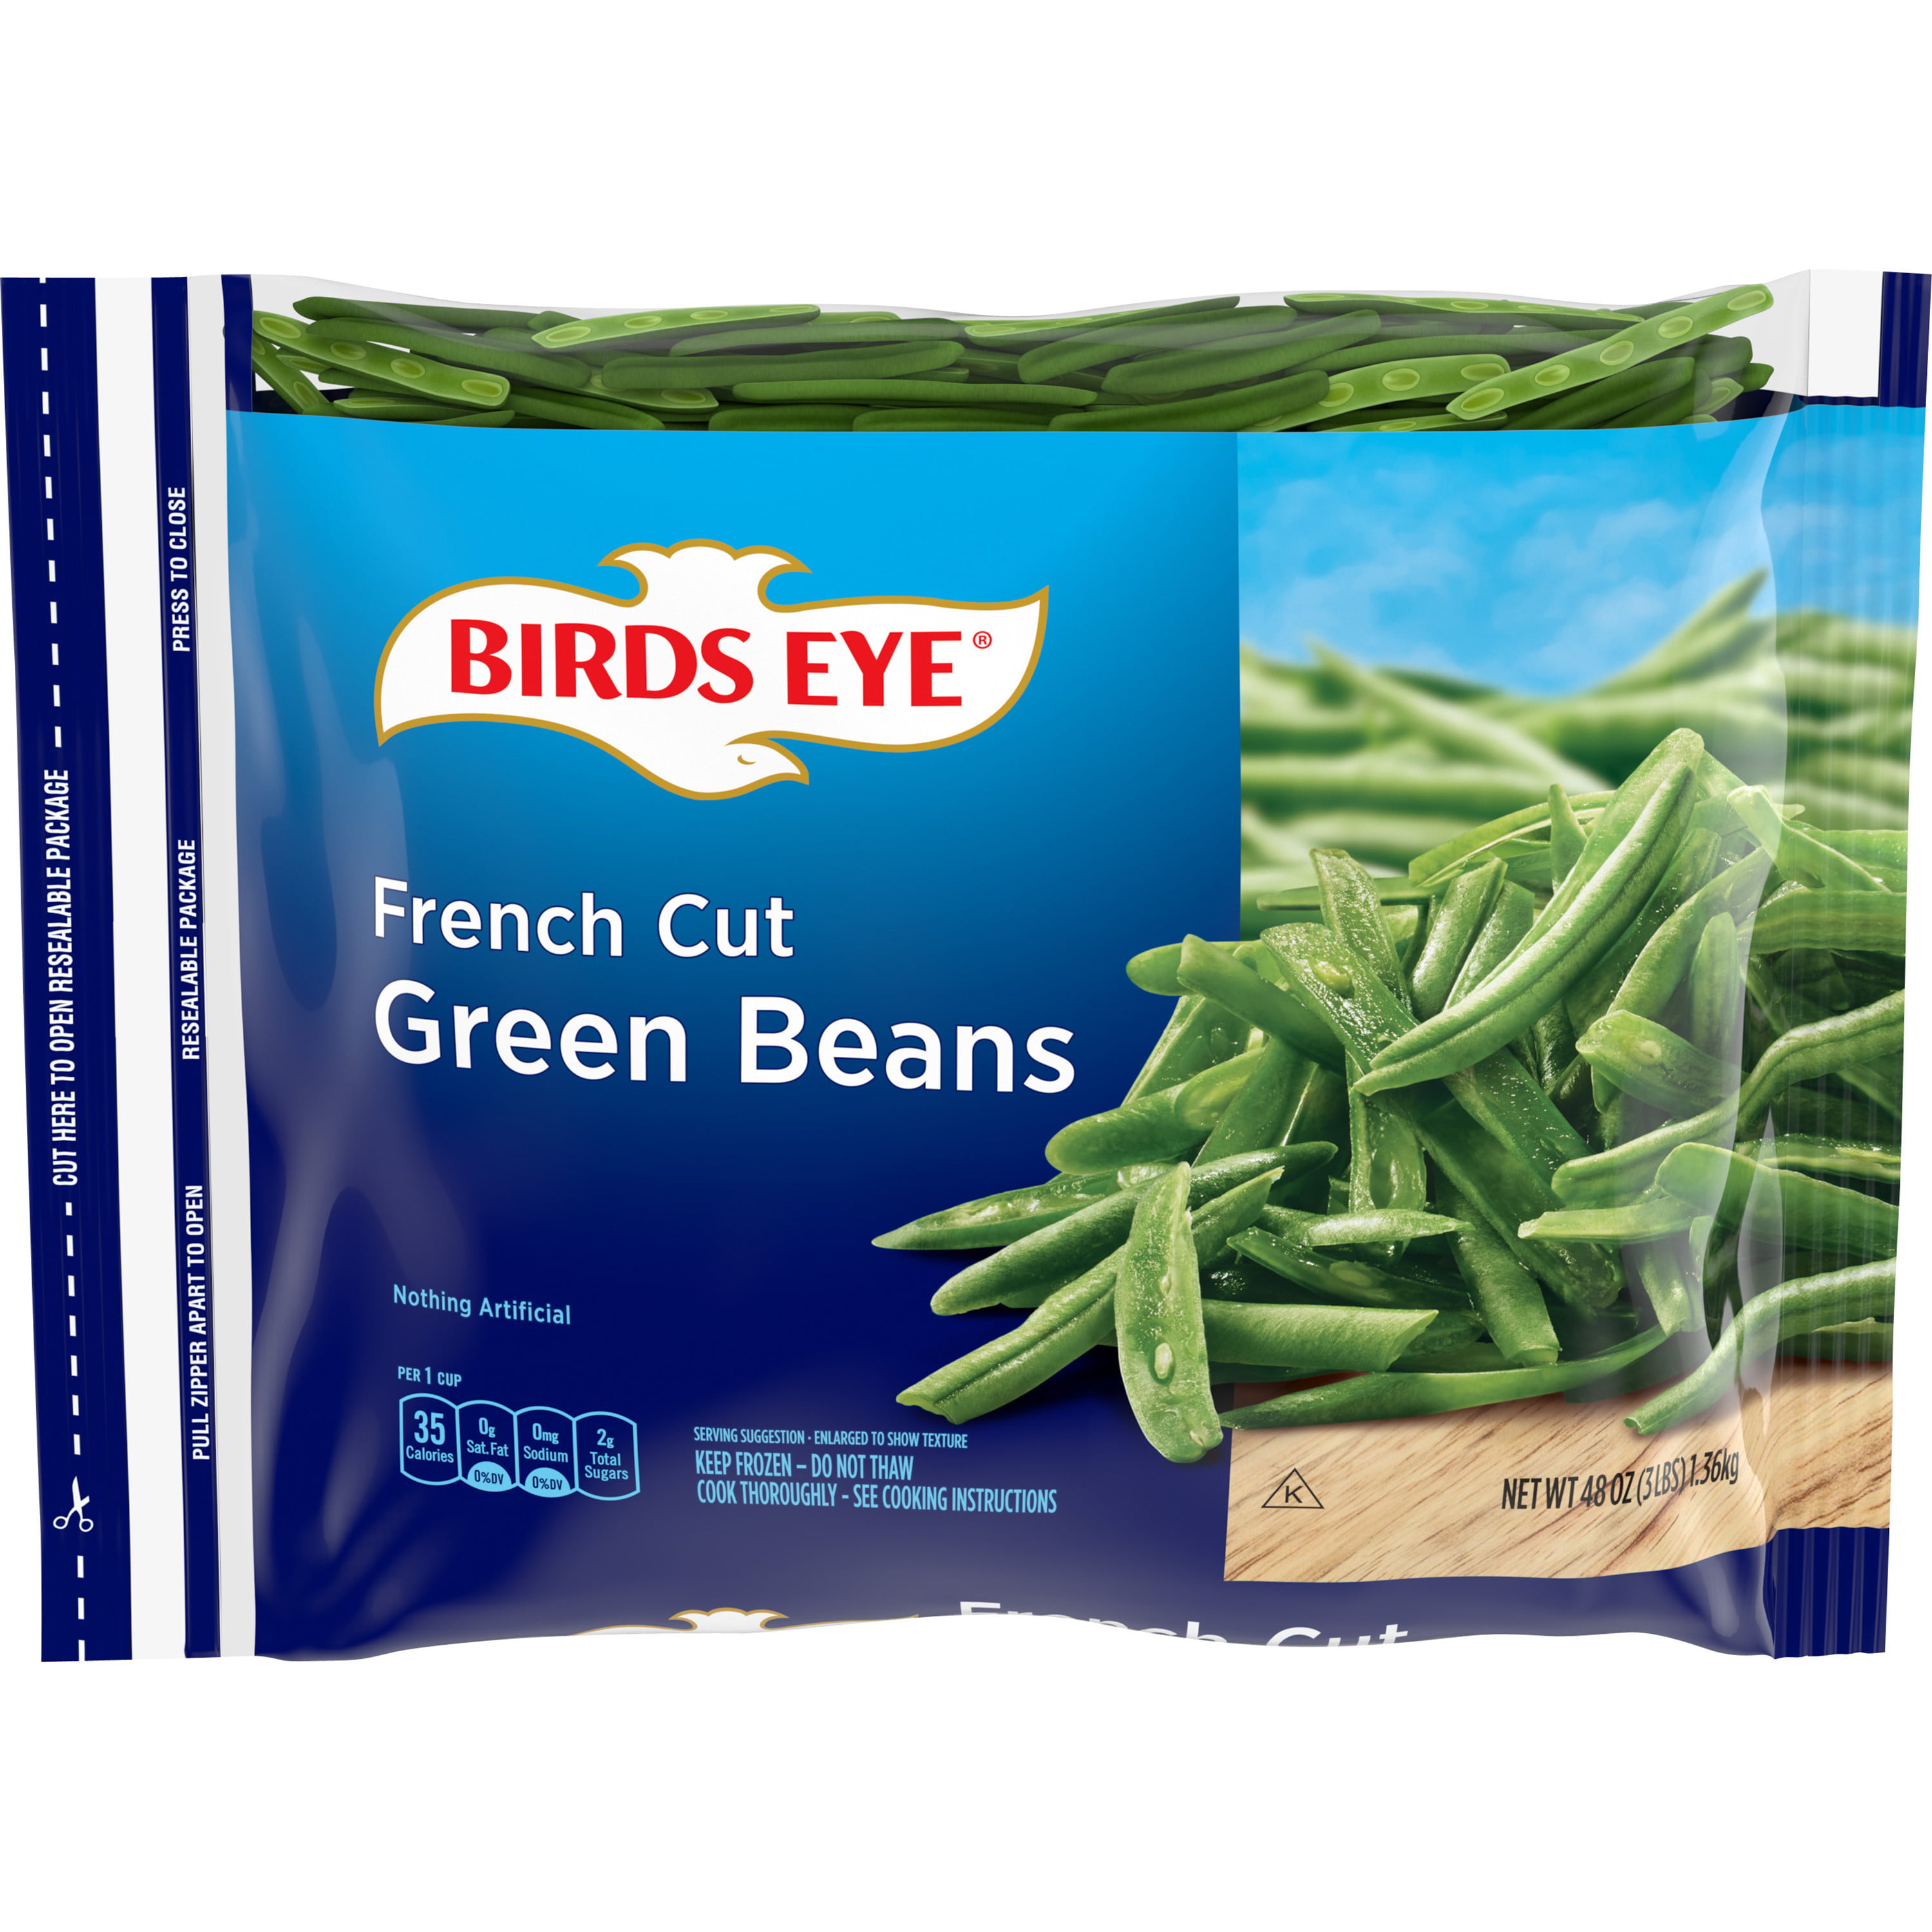 Birds Eye French Cut Green Beans, Frozen Green Beans, 48 Oz - Walmart